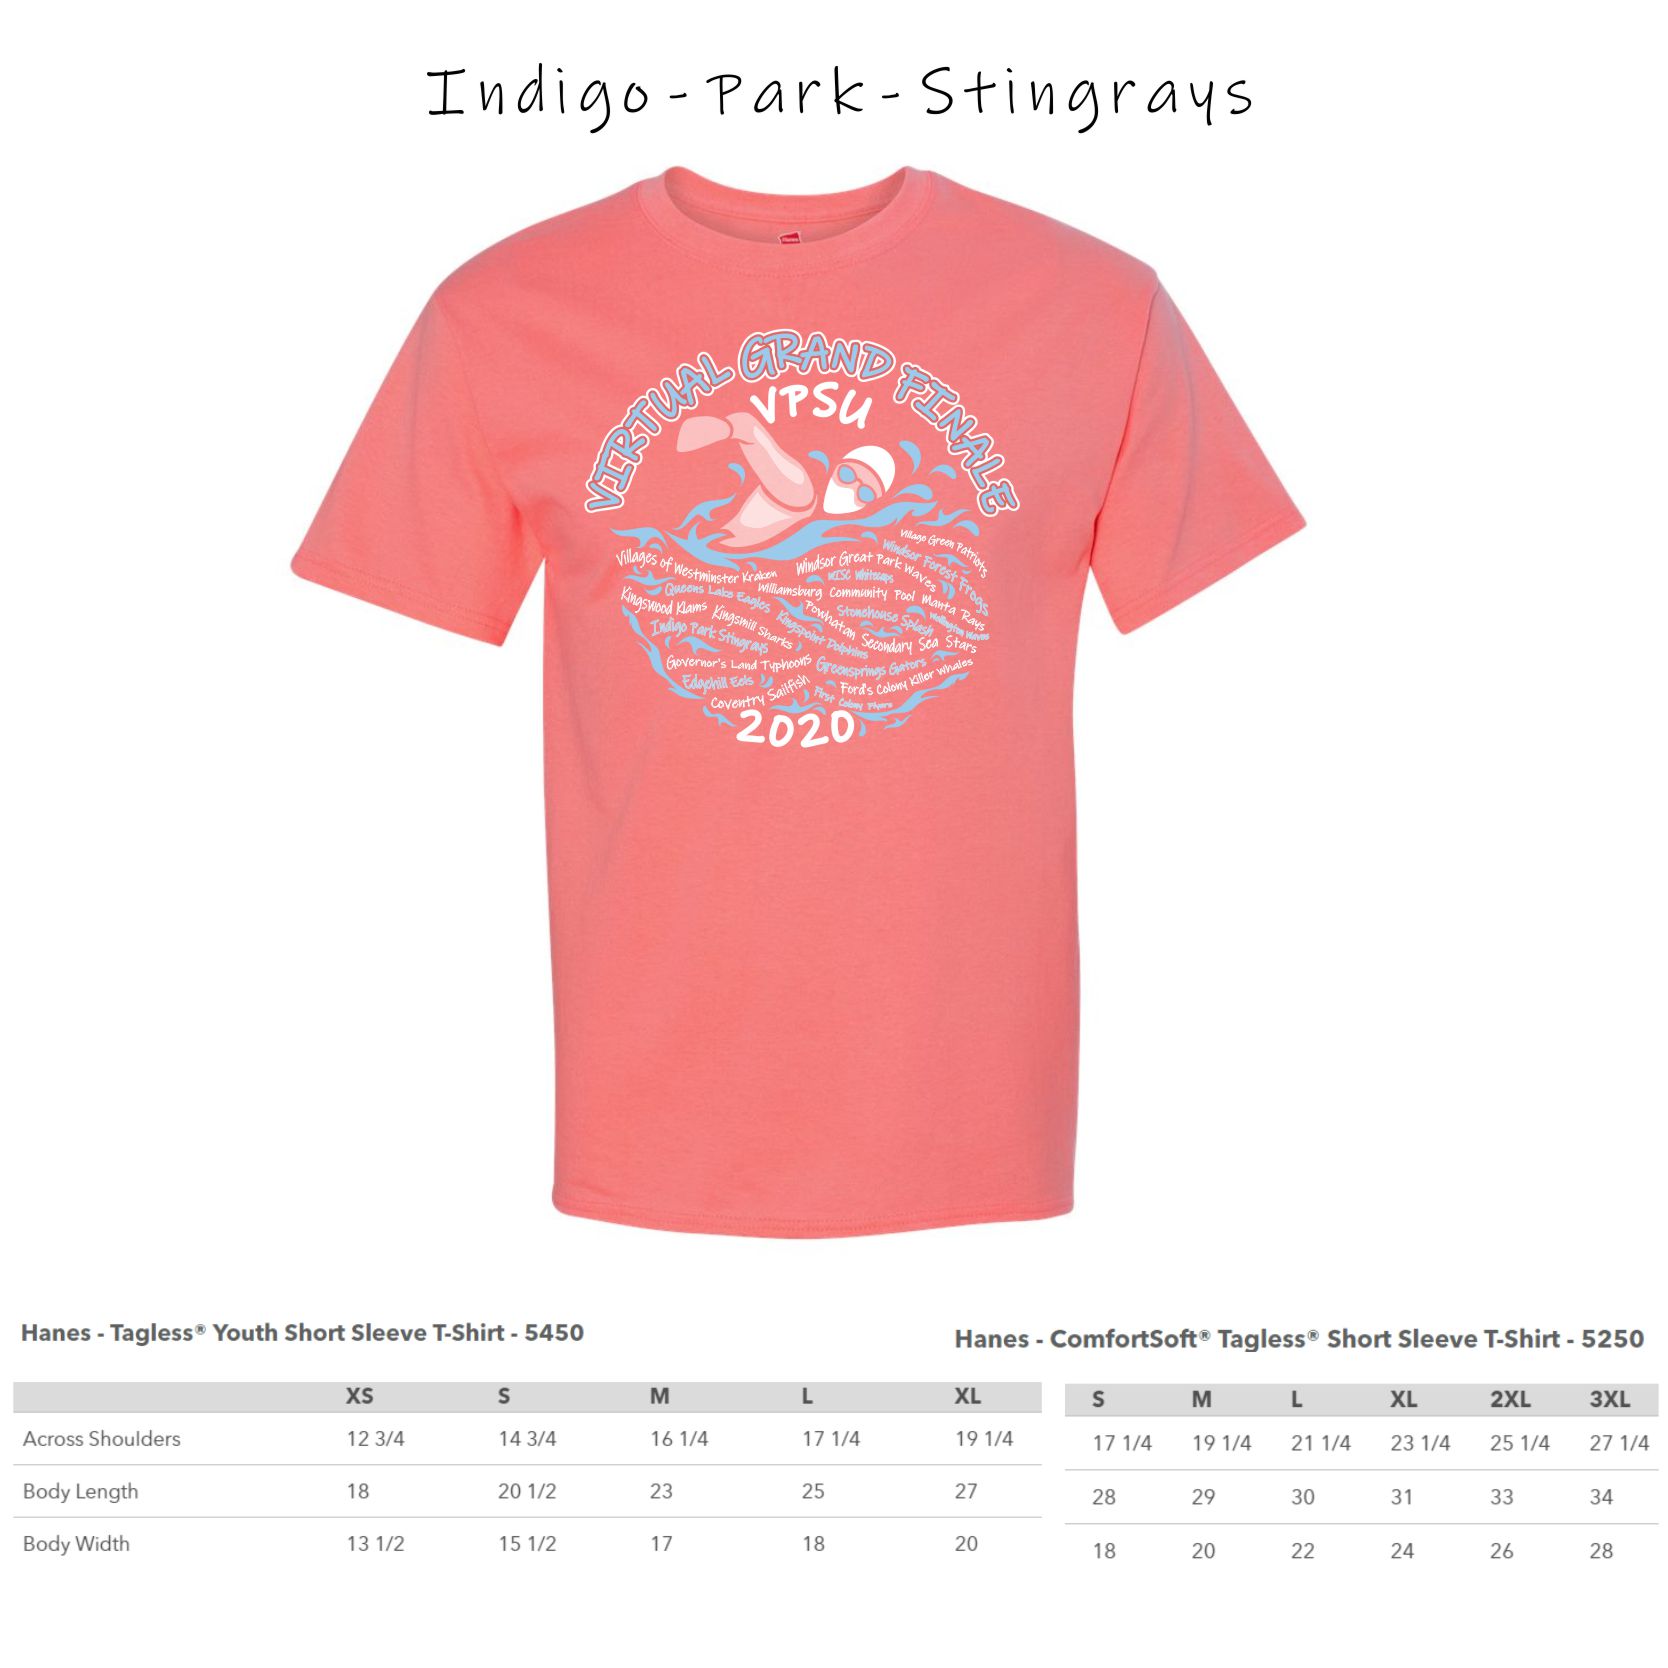 1 - Indigo Park Stingrays